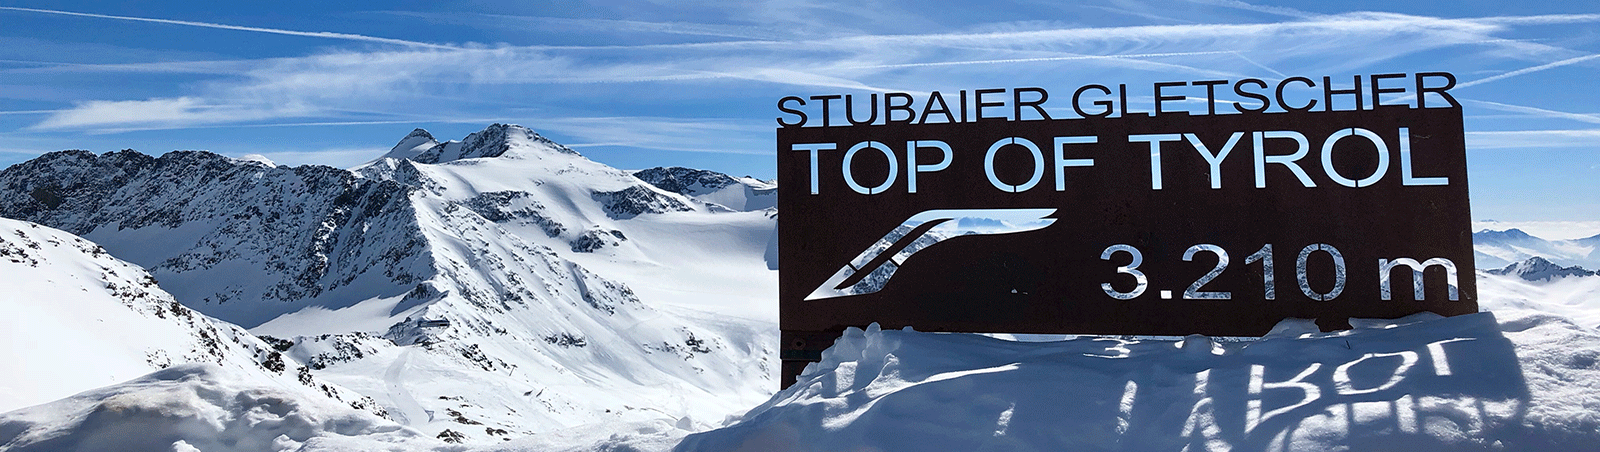 Stubai Glacier, School ski Trips